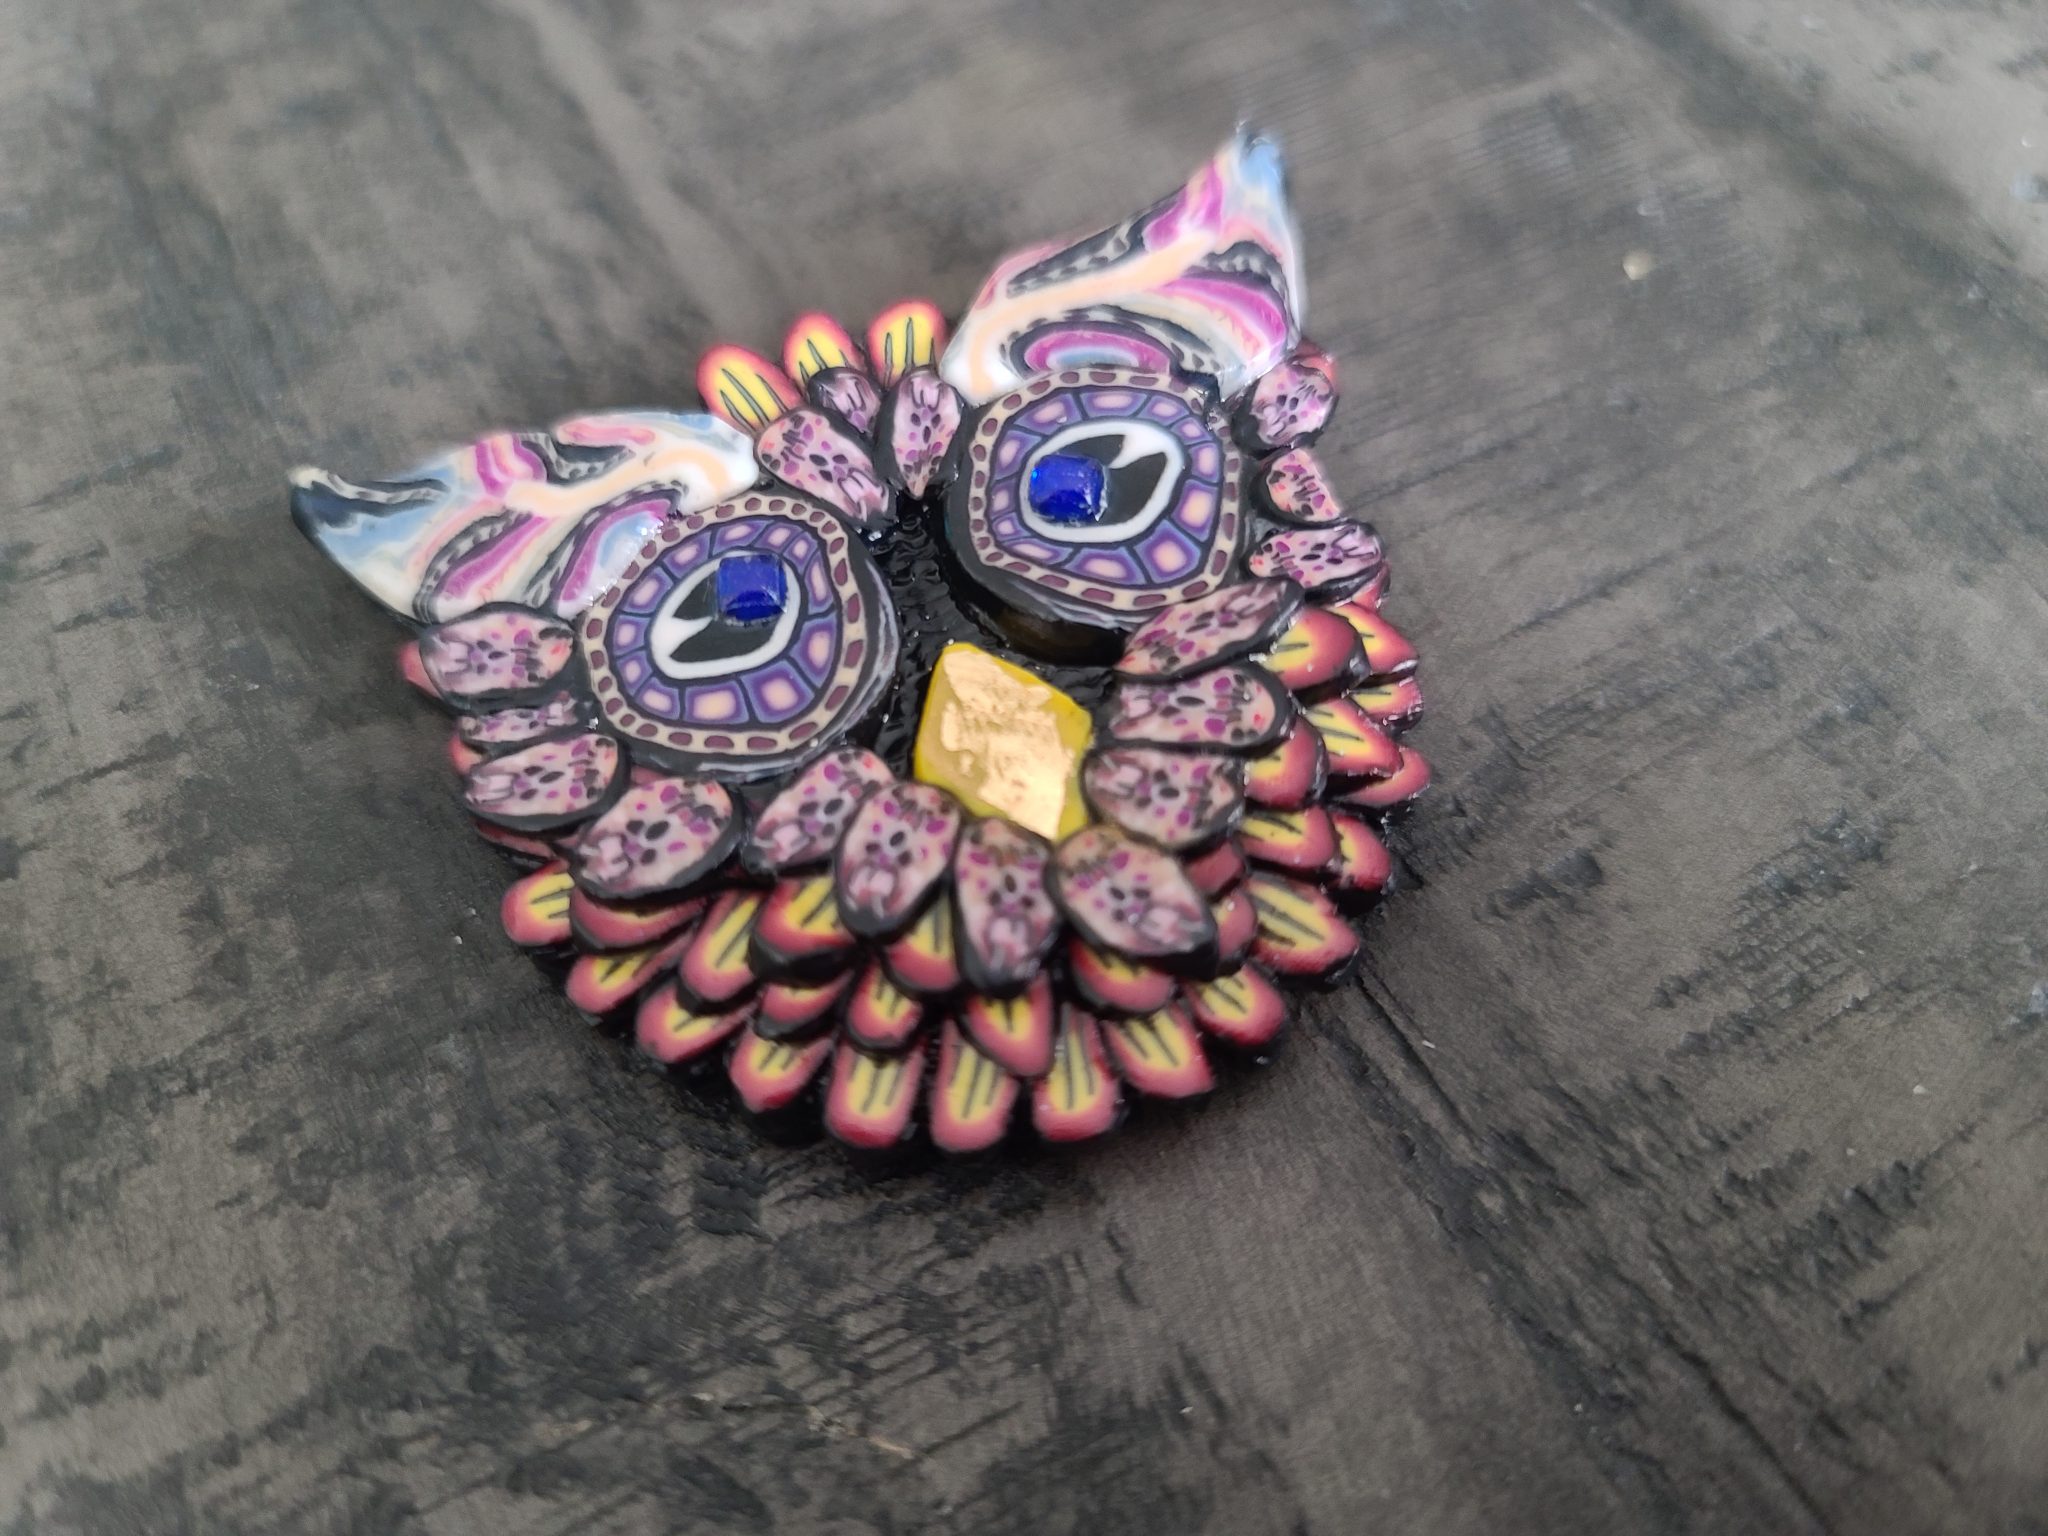 Owl brooch - 4